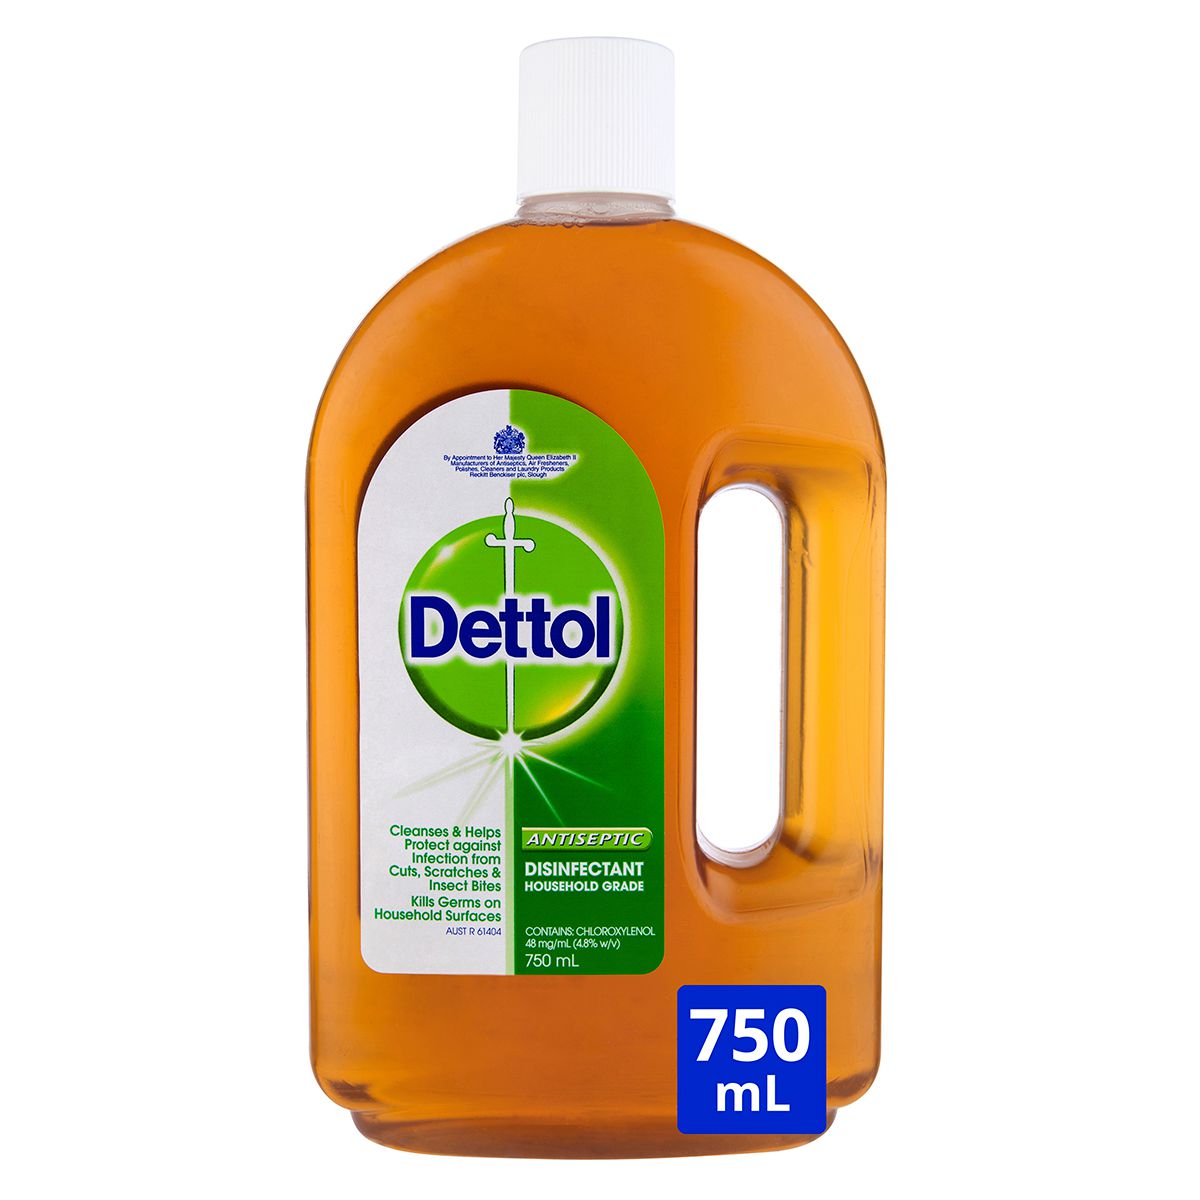 dettol antiseptic disinfectant household grade